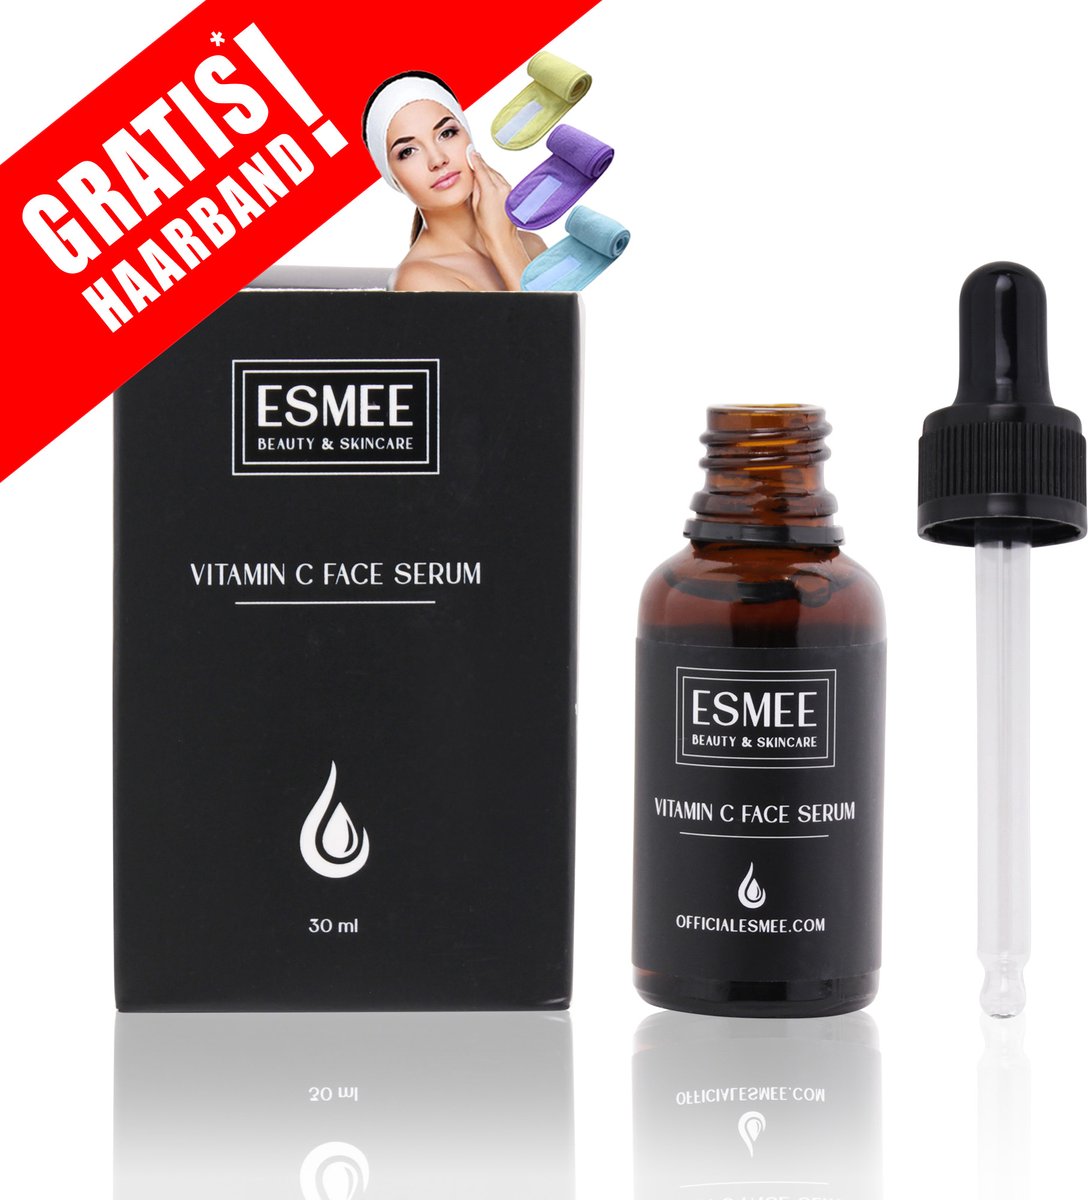 Official Esmee Vitamine C Serum - Gezicht serum - Skincare -c serum- retinol serum- Verzorgende serum - Huid serum vrouwen - Huid serum mannen - Verzorgende werking-Droge huid - Gevoelige huid - 30ML